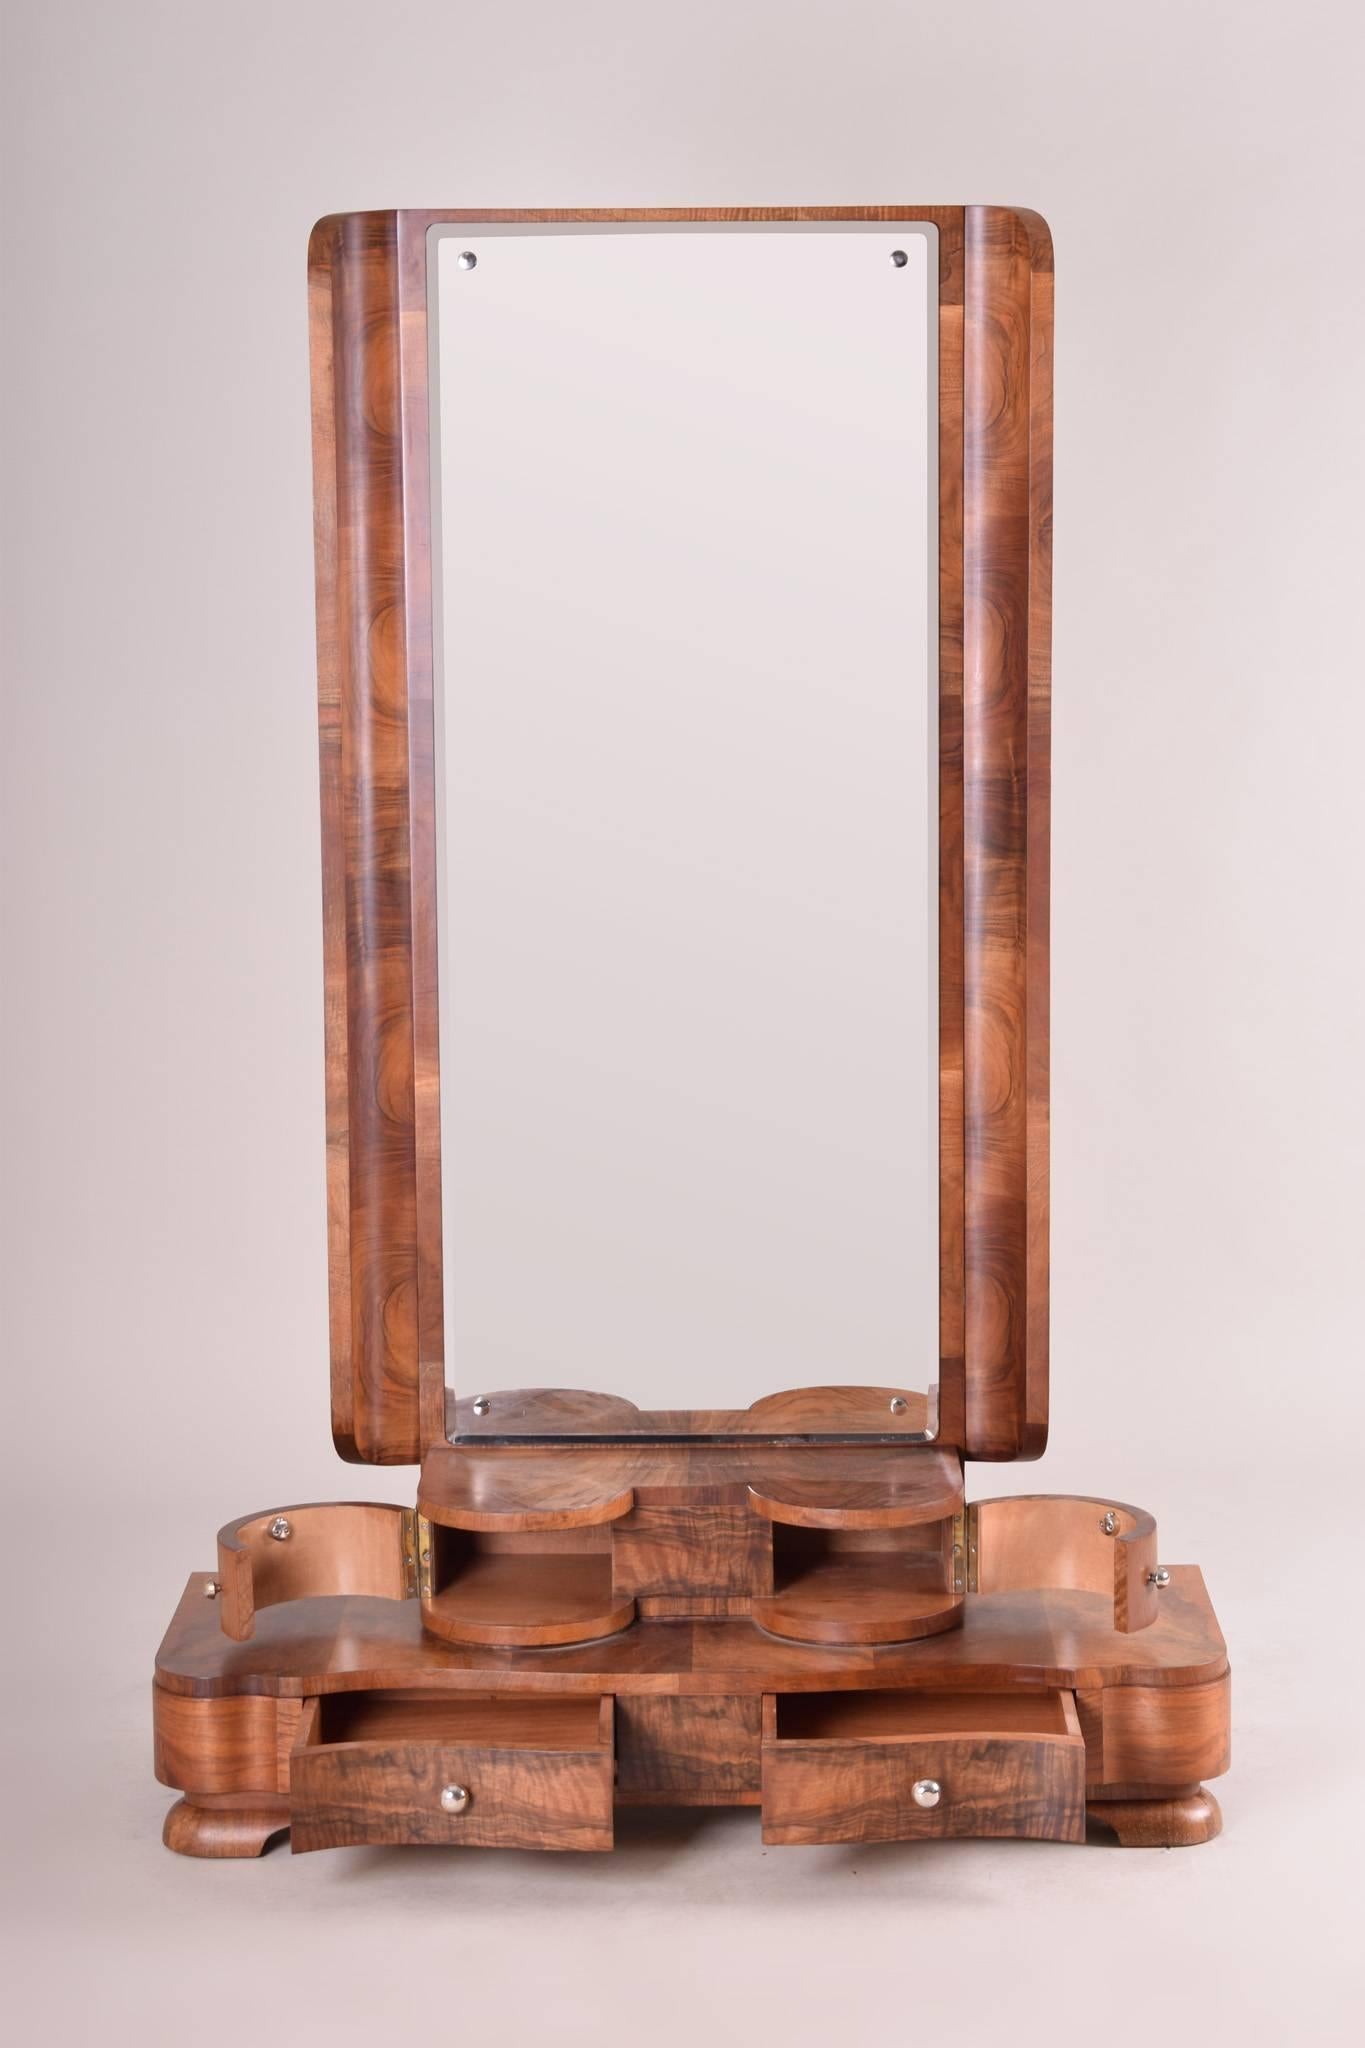 Early 20th Century Walnut Art Deco Dressing Mirror from Czechoslovakia, Period 1920-1929